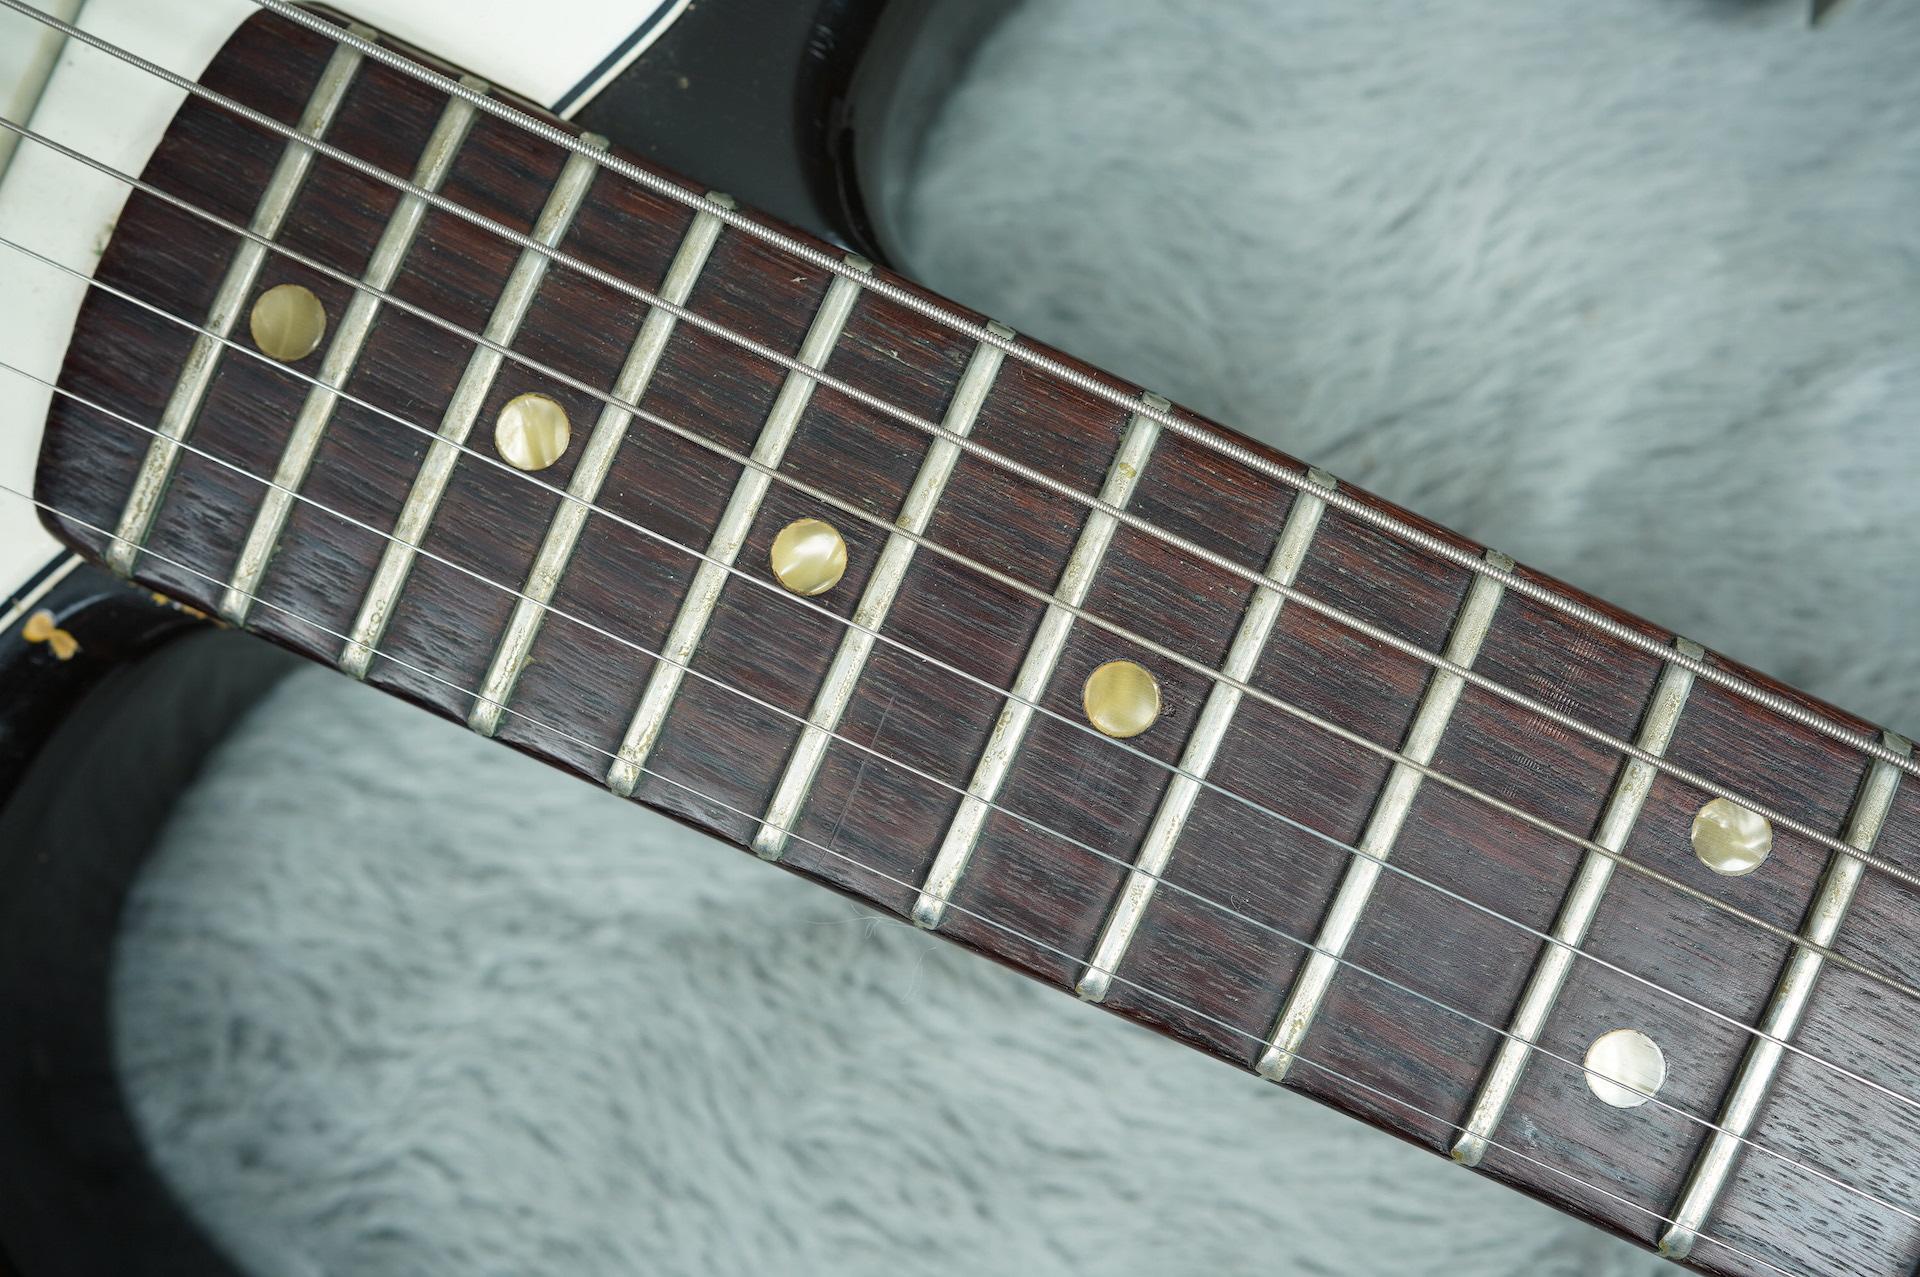 1966 Fender Stratocaster